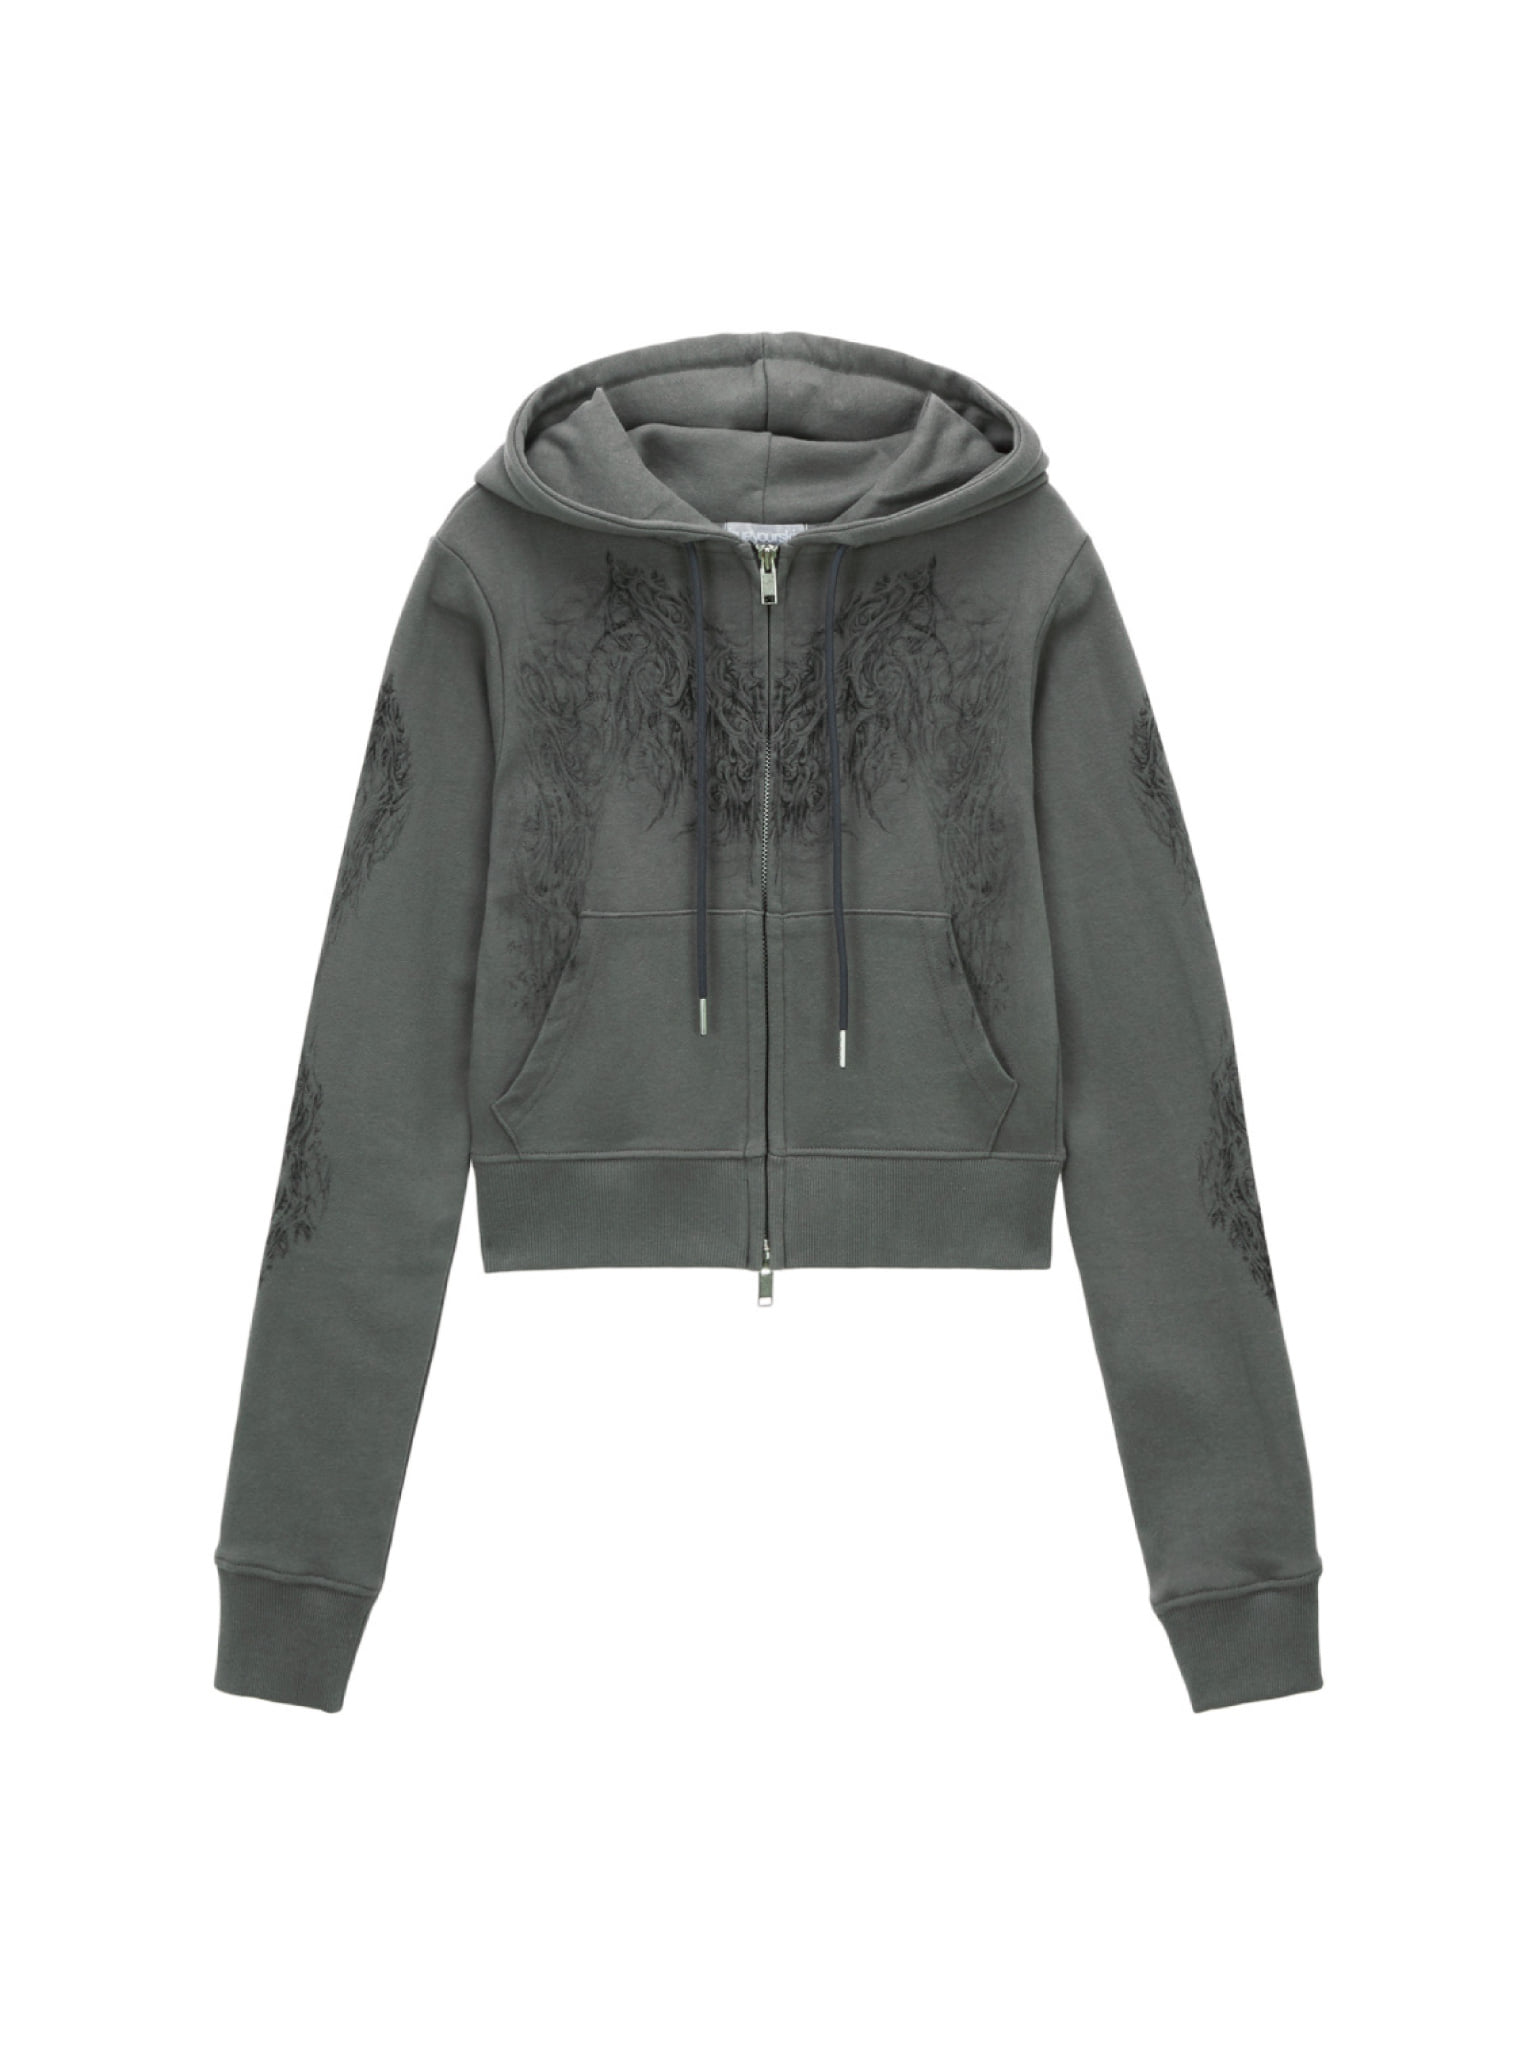 Skully cropped hoodie zip-up (Khaki)